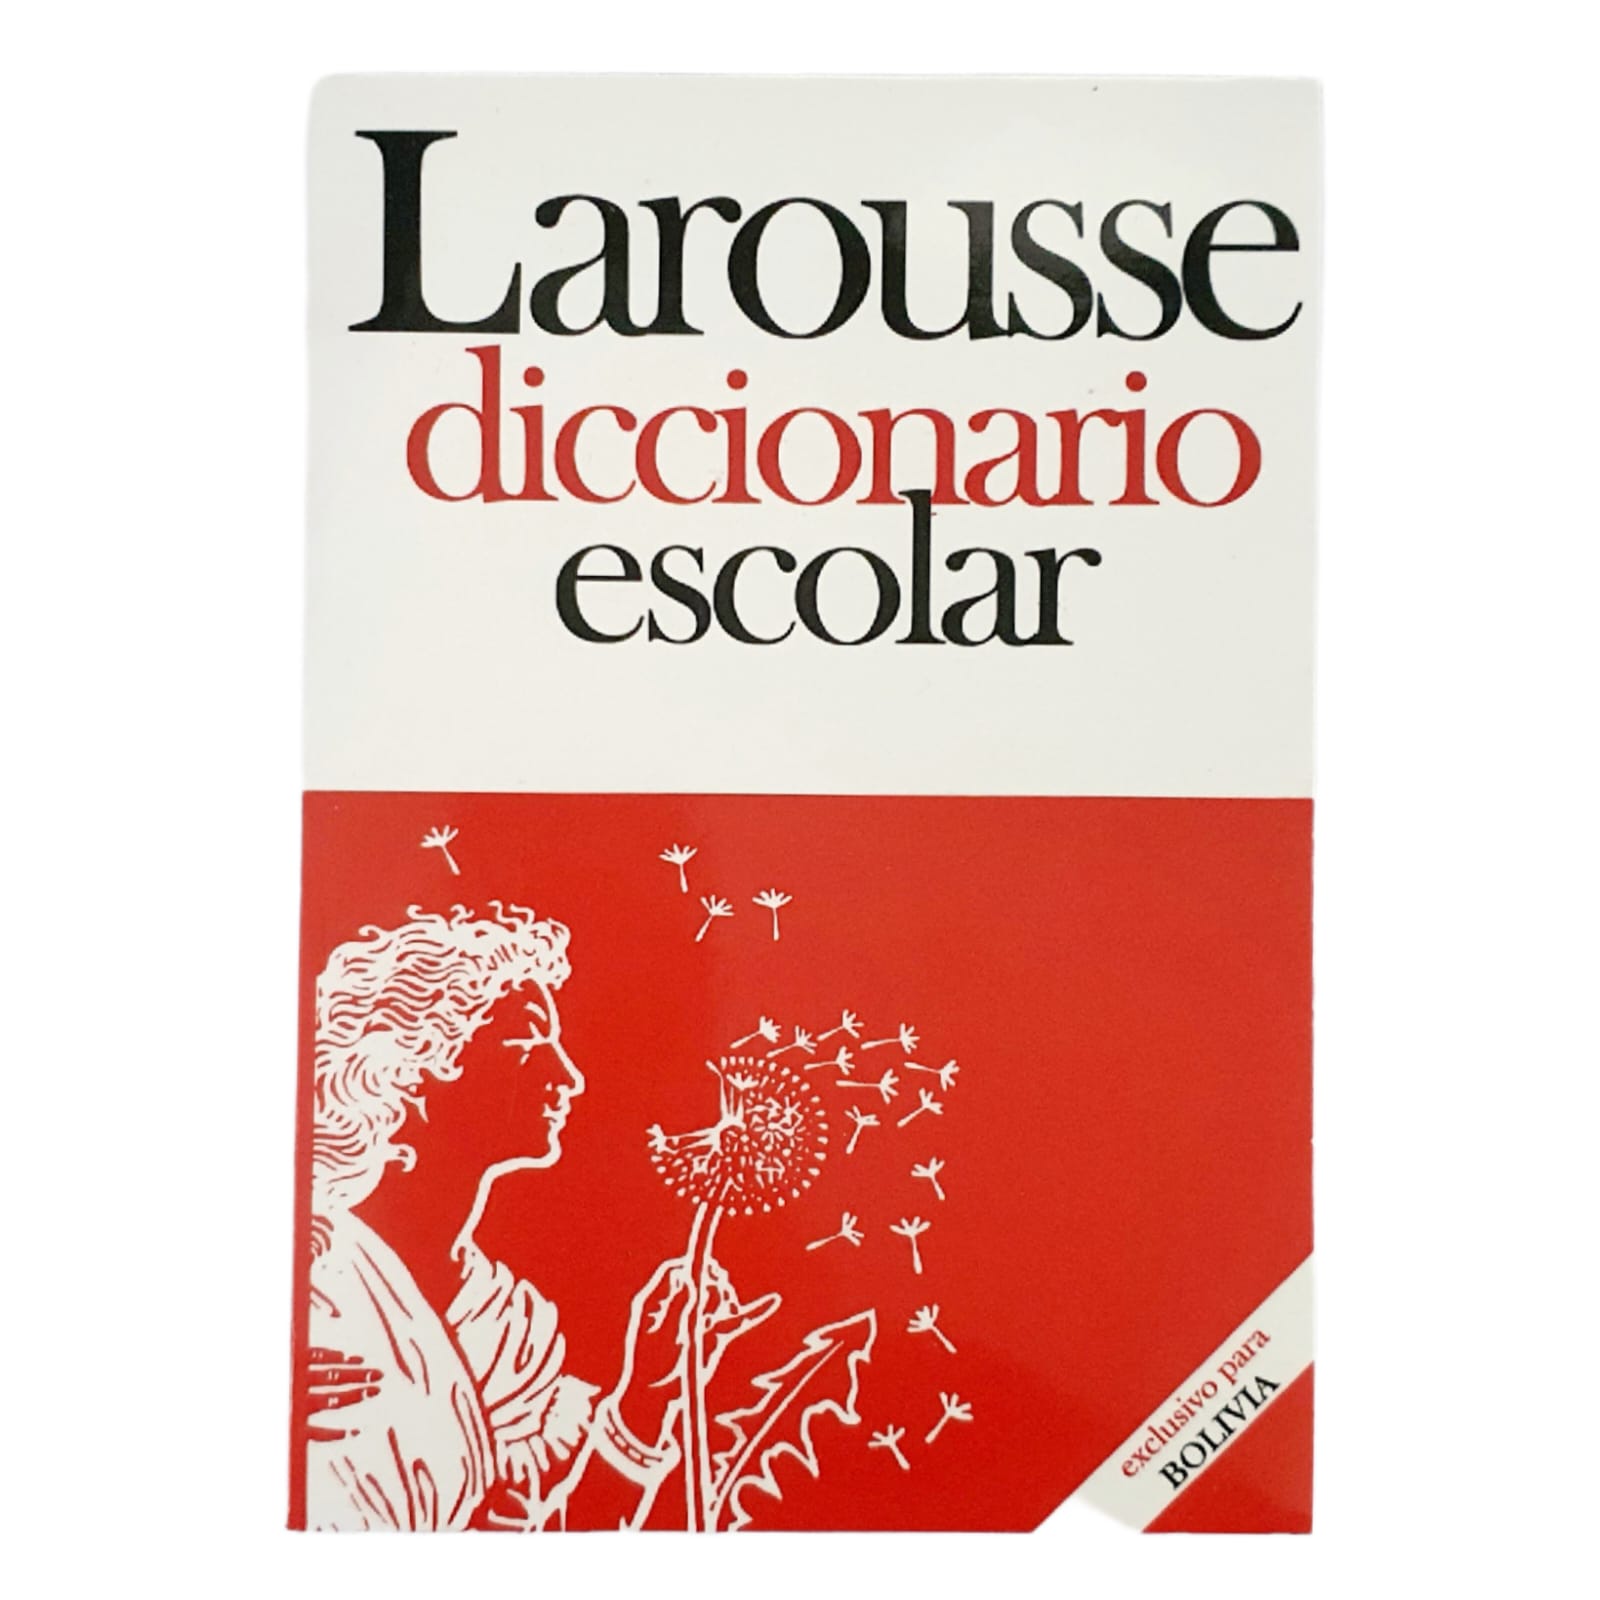 Diccionario Ilustrado Lexicom